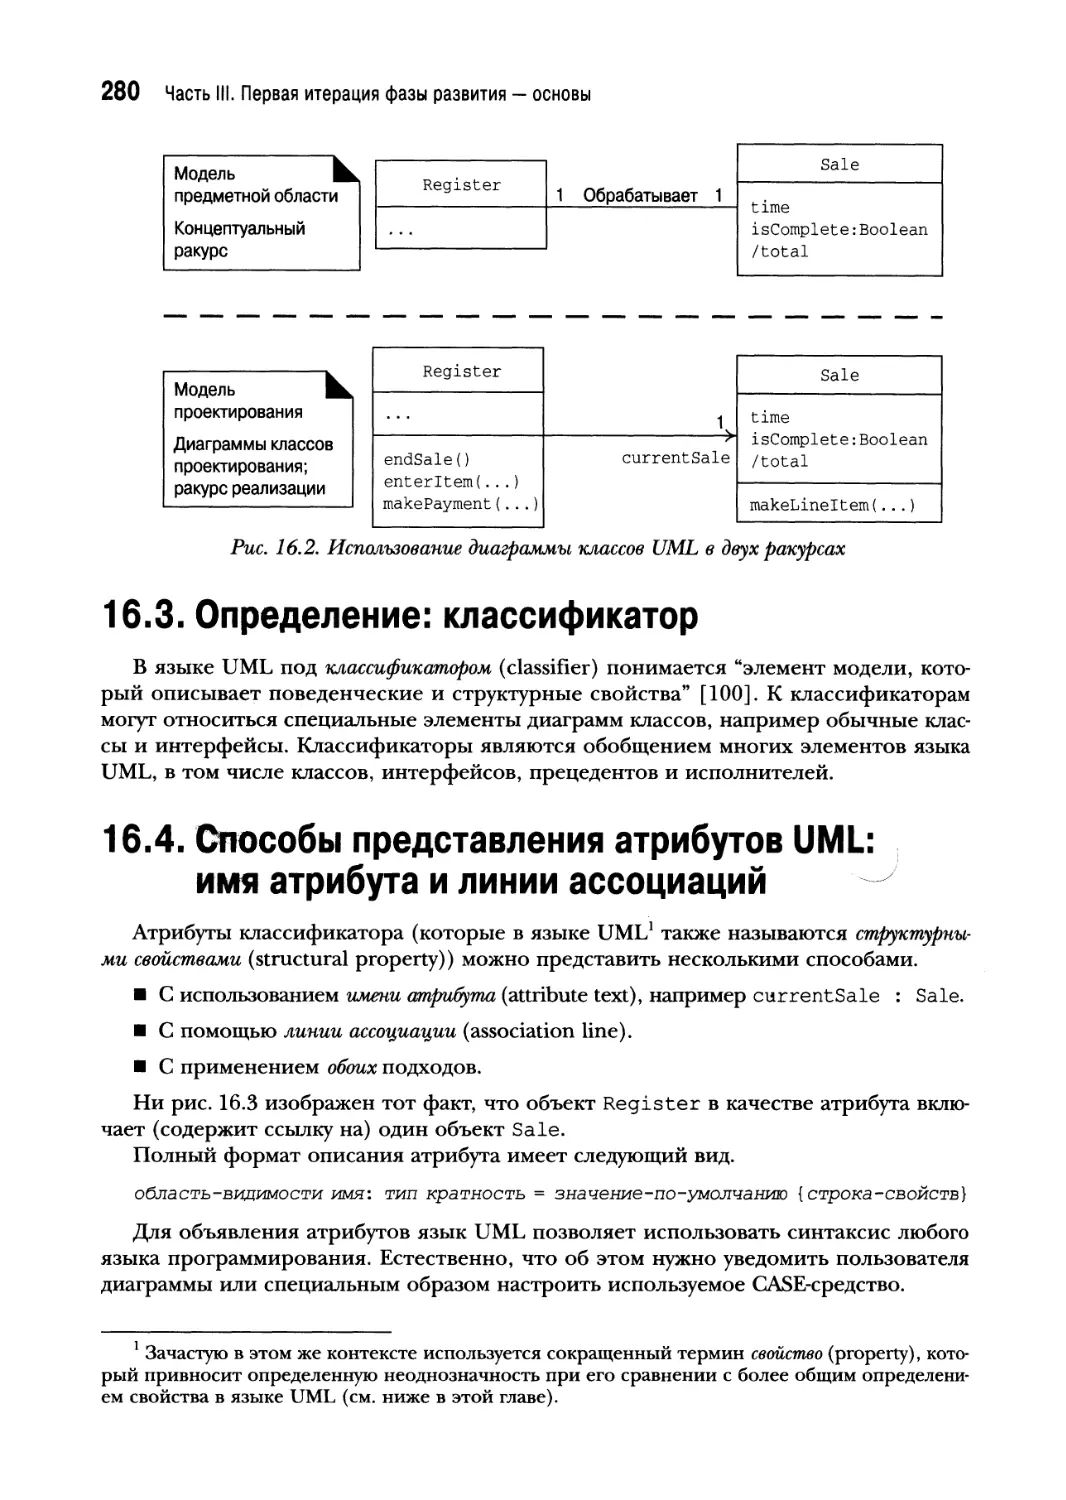 16.3. Определение: классификатор
16.4. Способы представления атрибутов UML: имя атрибута и линии ассоциаций